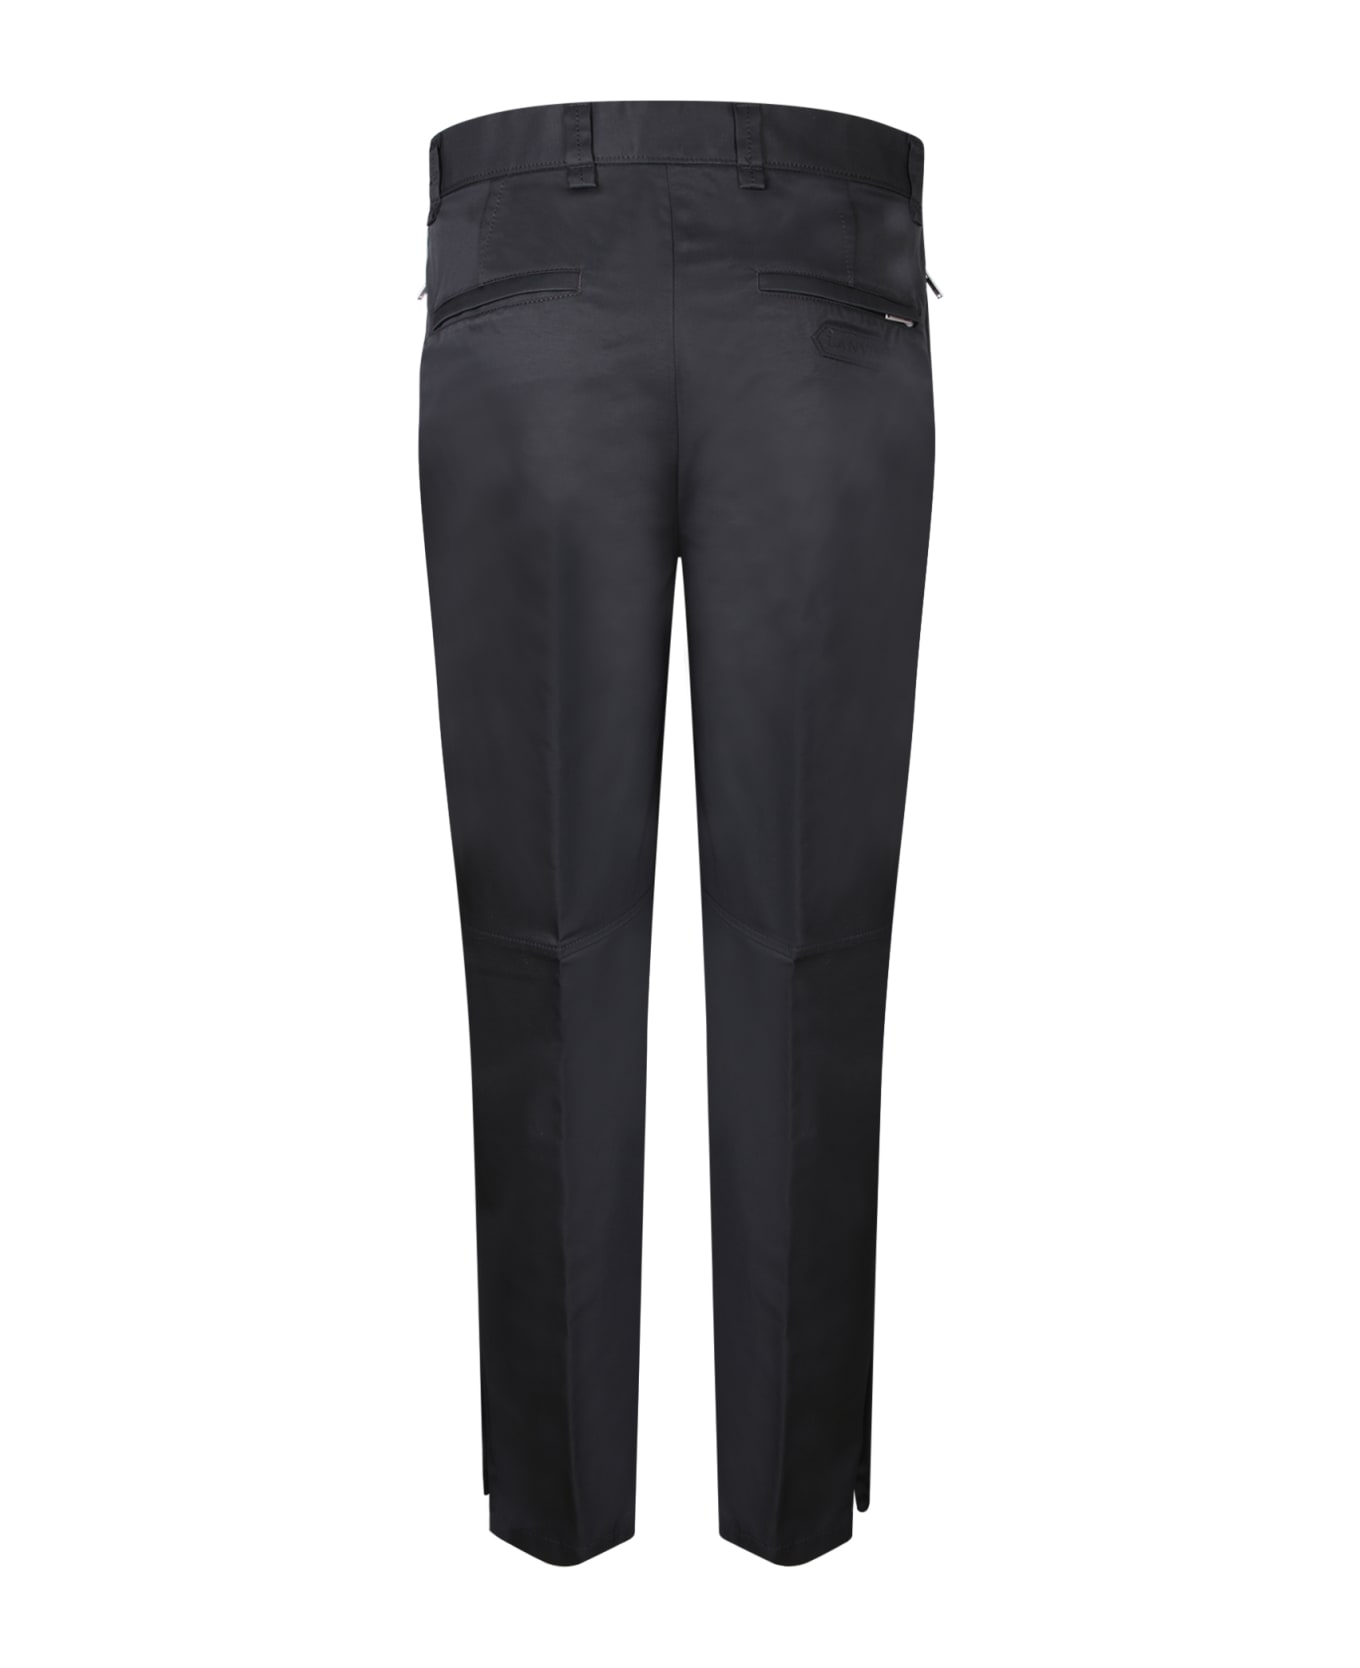 Lanvin Pants In Black Cotton - Black